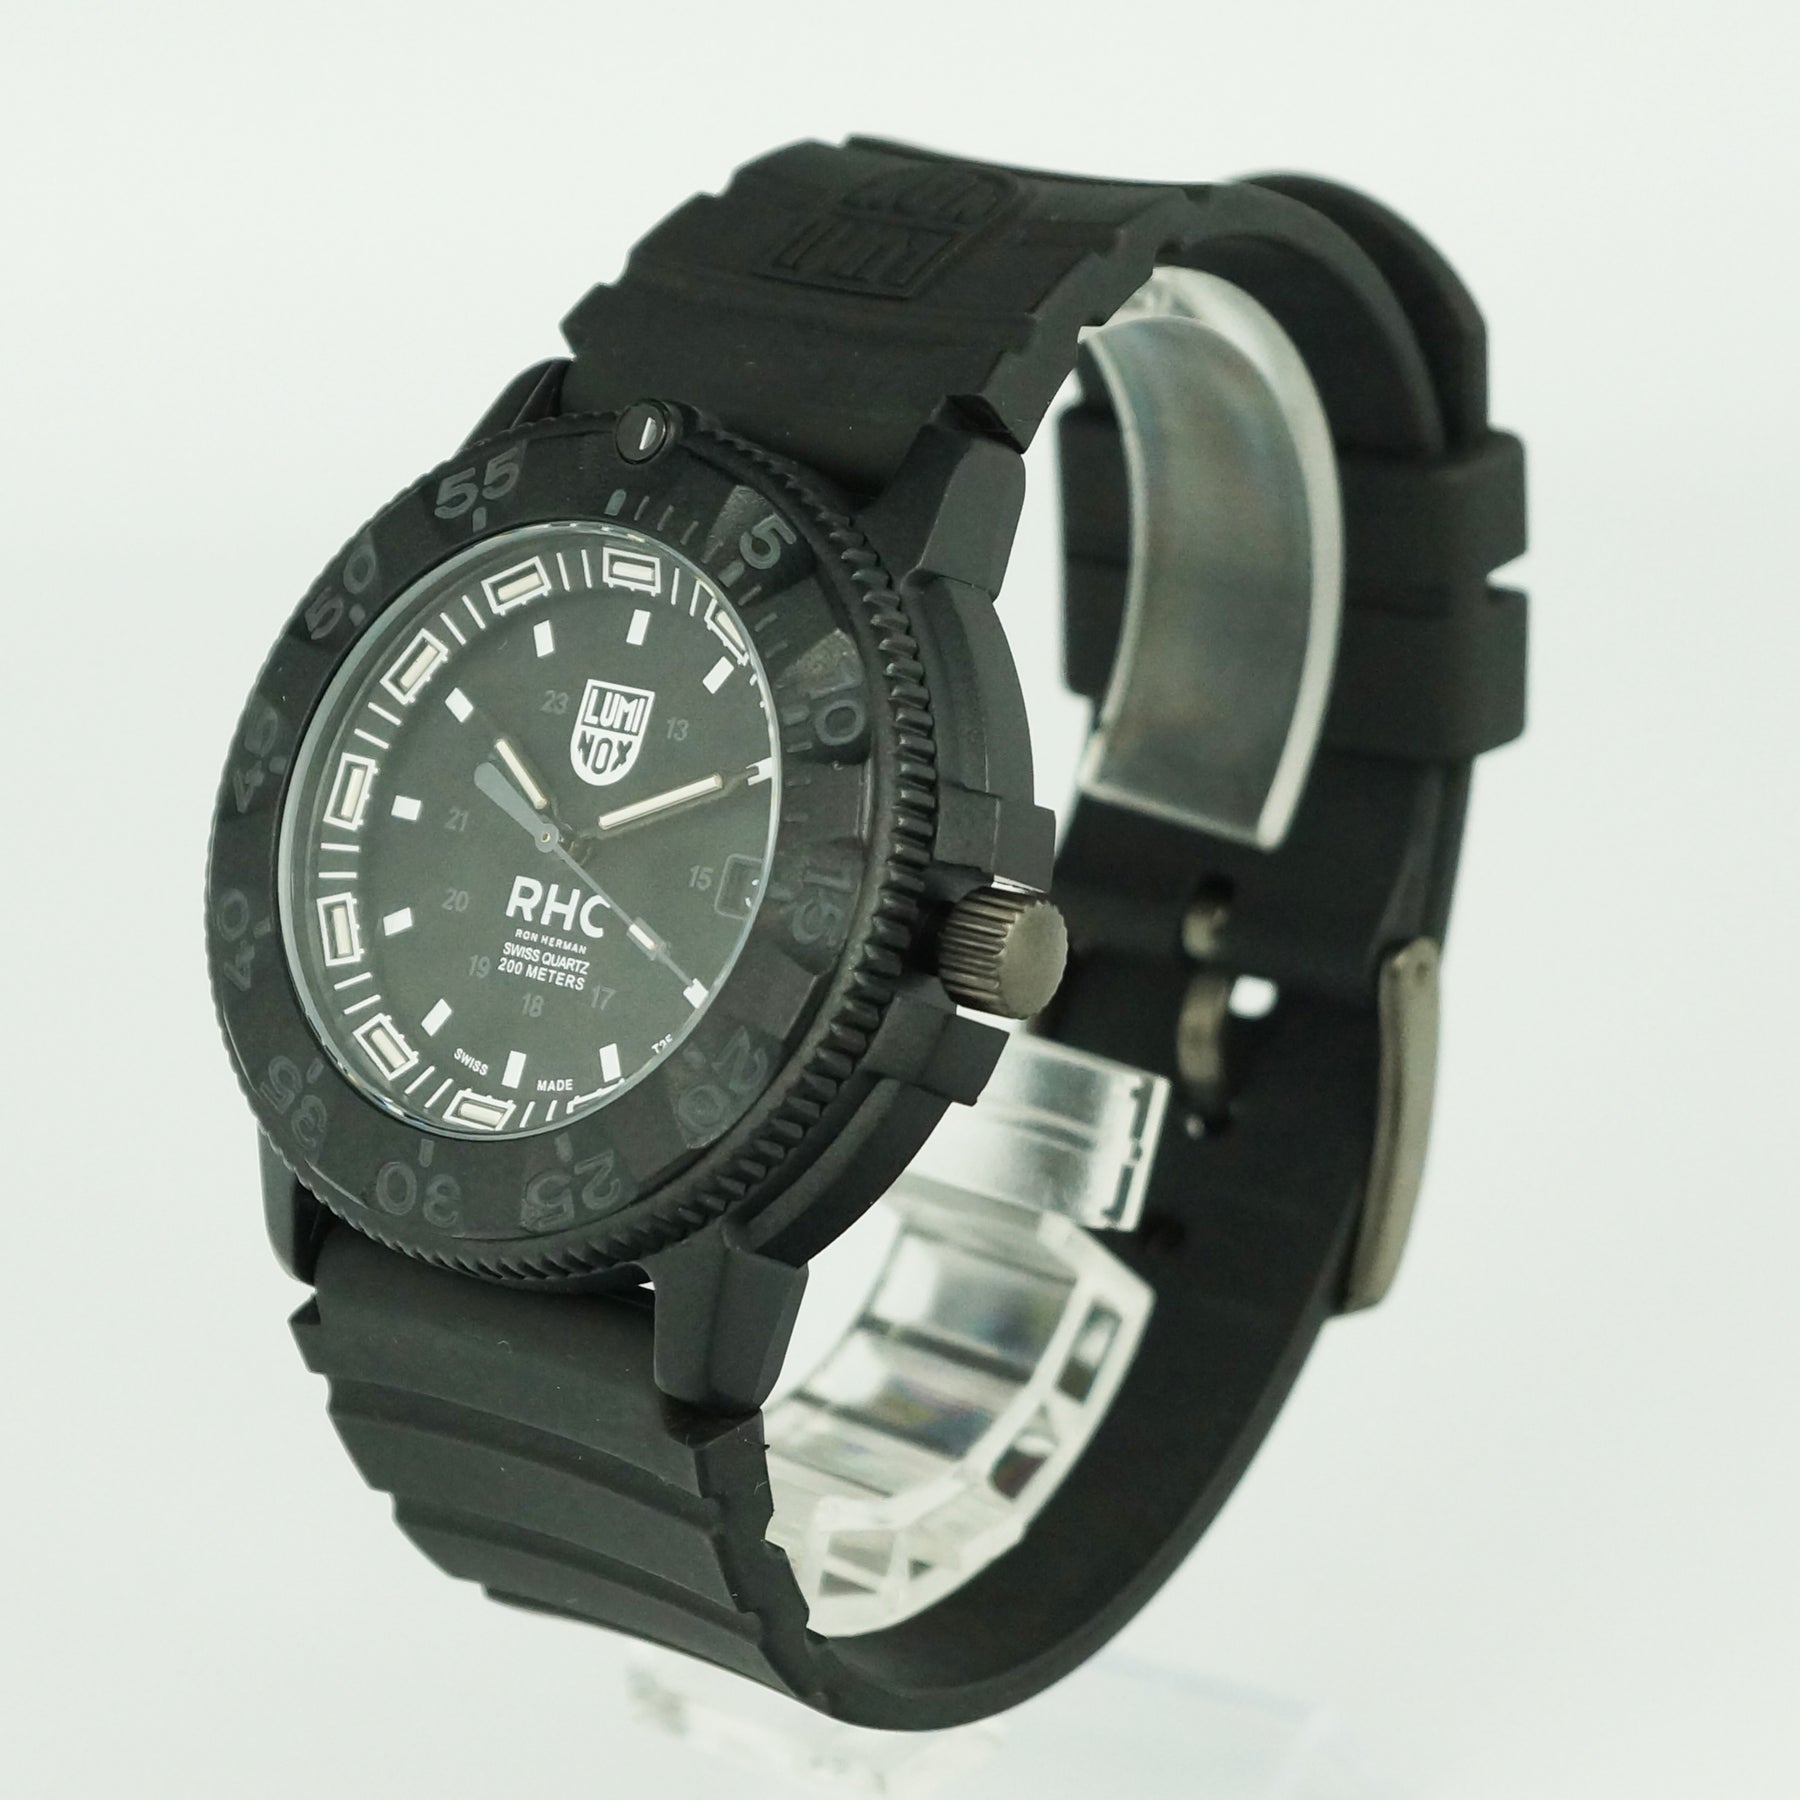 ロンハーマンXルミノックス 012/150 - ブランド腕時計